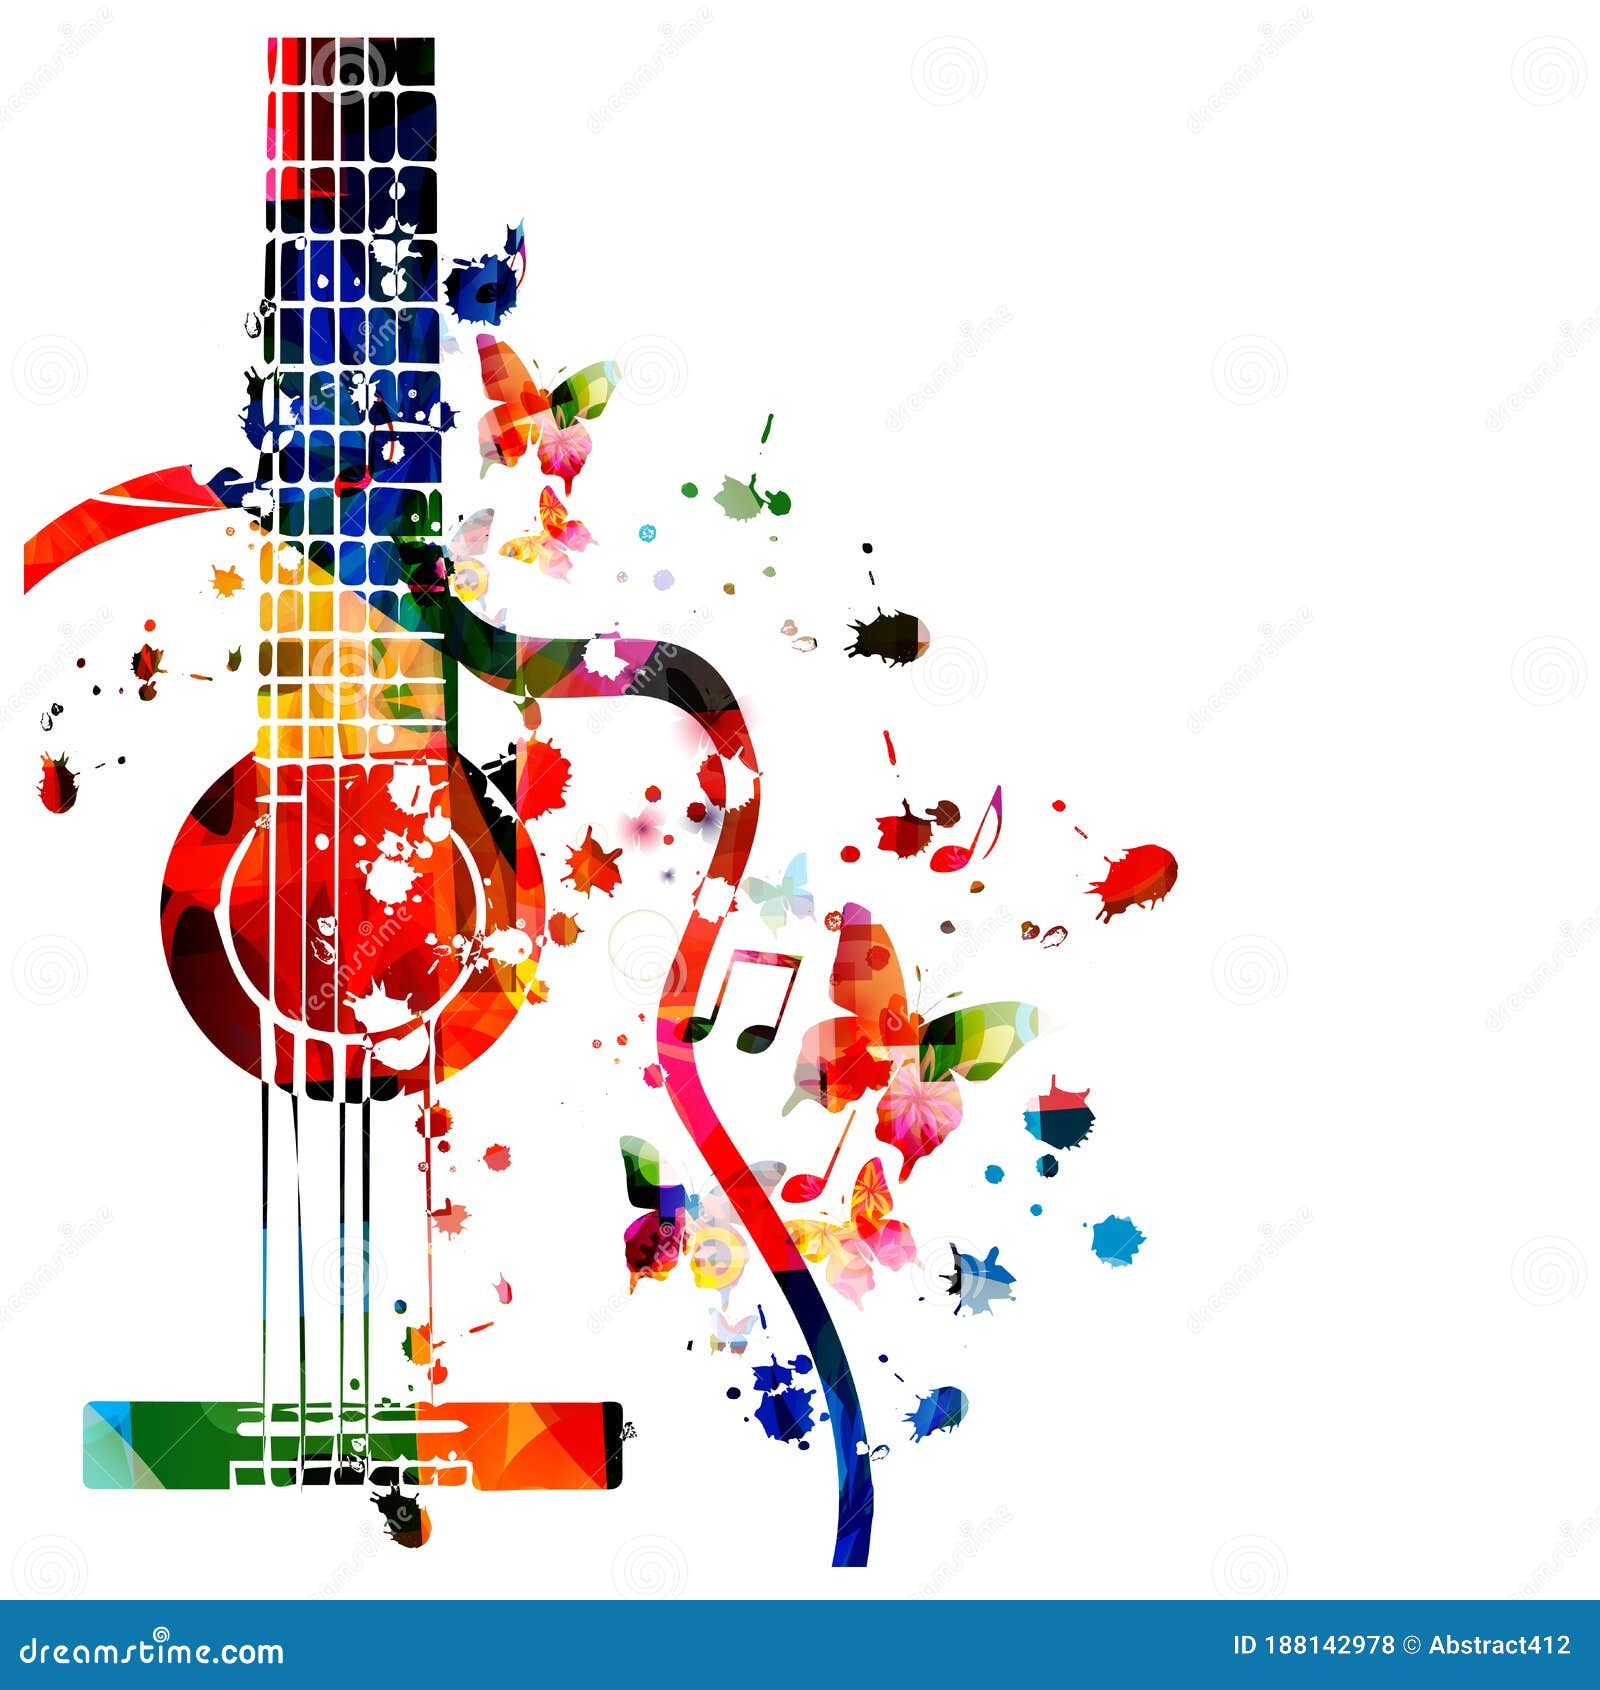 Đàn guitar đầy màu sắc với nốt nhạc mang lại sự sống động và nhịp nhàng cho bất kỳ không gian nào. Dù cho bạn đang là nghệ sĩ đàn guitar giỏi hay chỉ là một người yêu âm nhạc đơn giản, những bức ảnh liên quan sẽ đem đến cho bạn niềm vui và sự đam mê trong âm nhạc. 